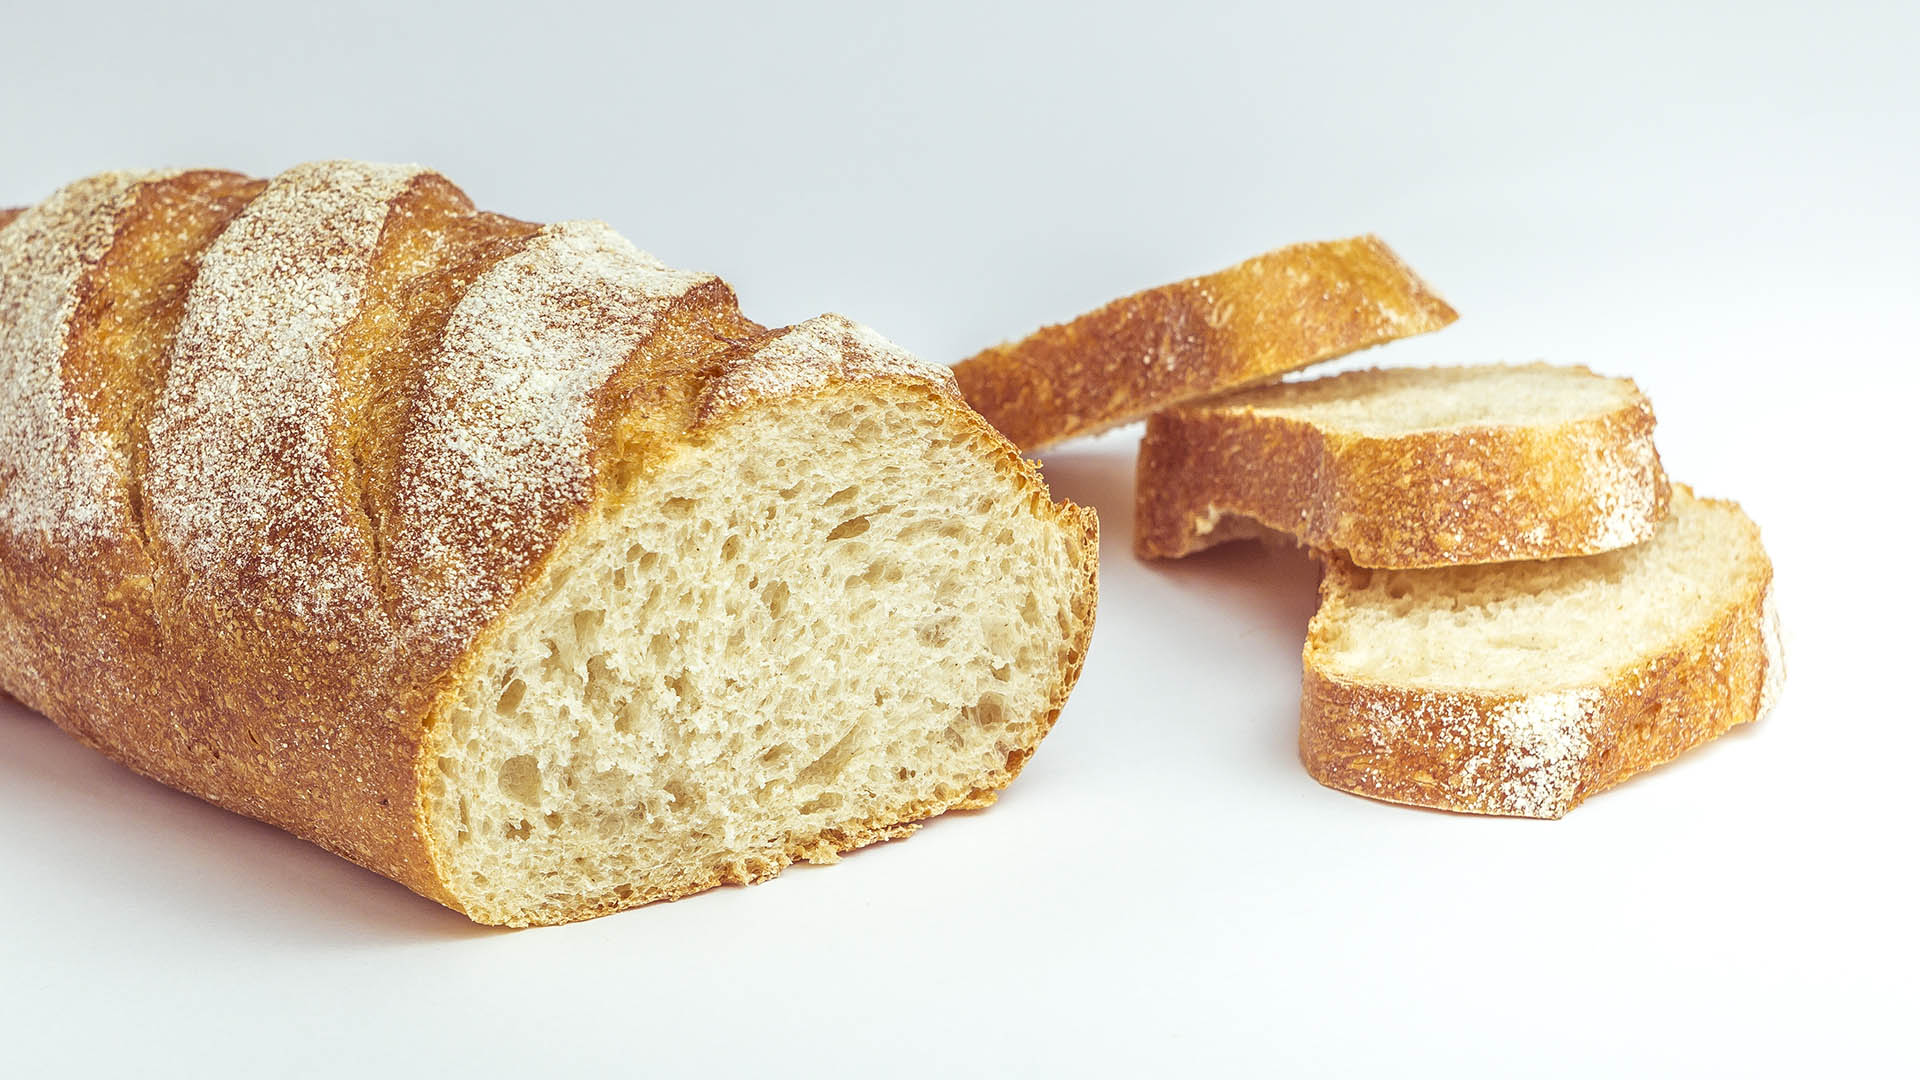 Buona abitudine  porzionare il pane in modo da regolarne il consumo a tavola